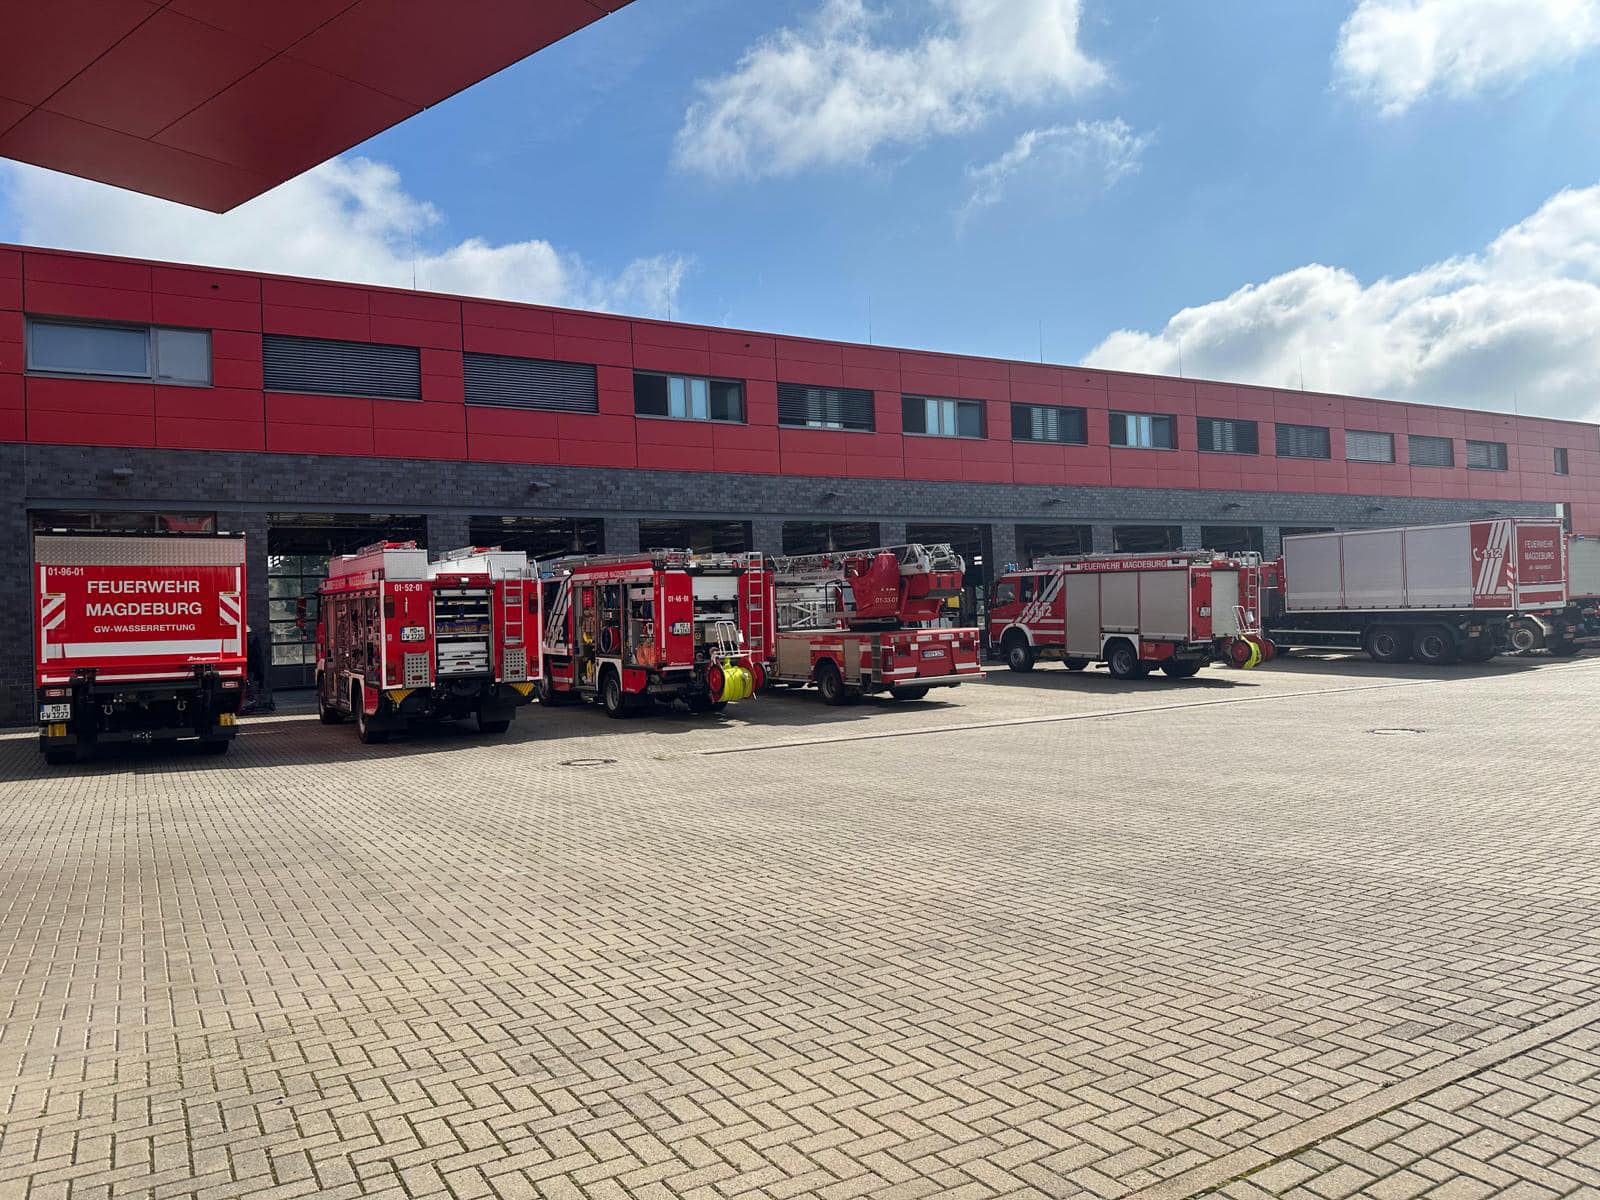 Feuerwehr Gernrode in Magdeburg!